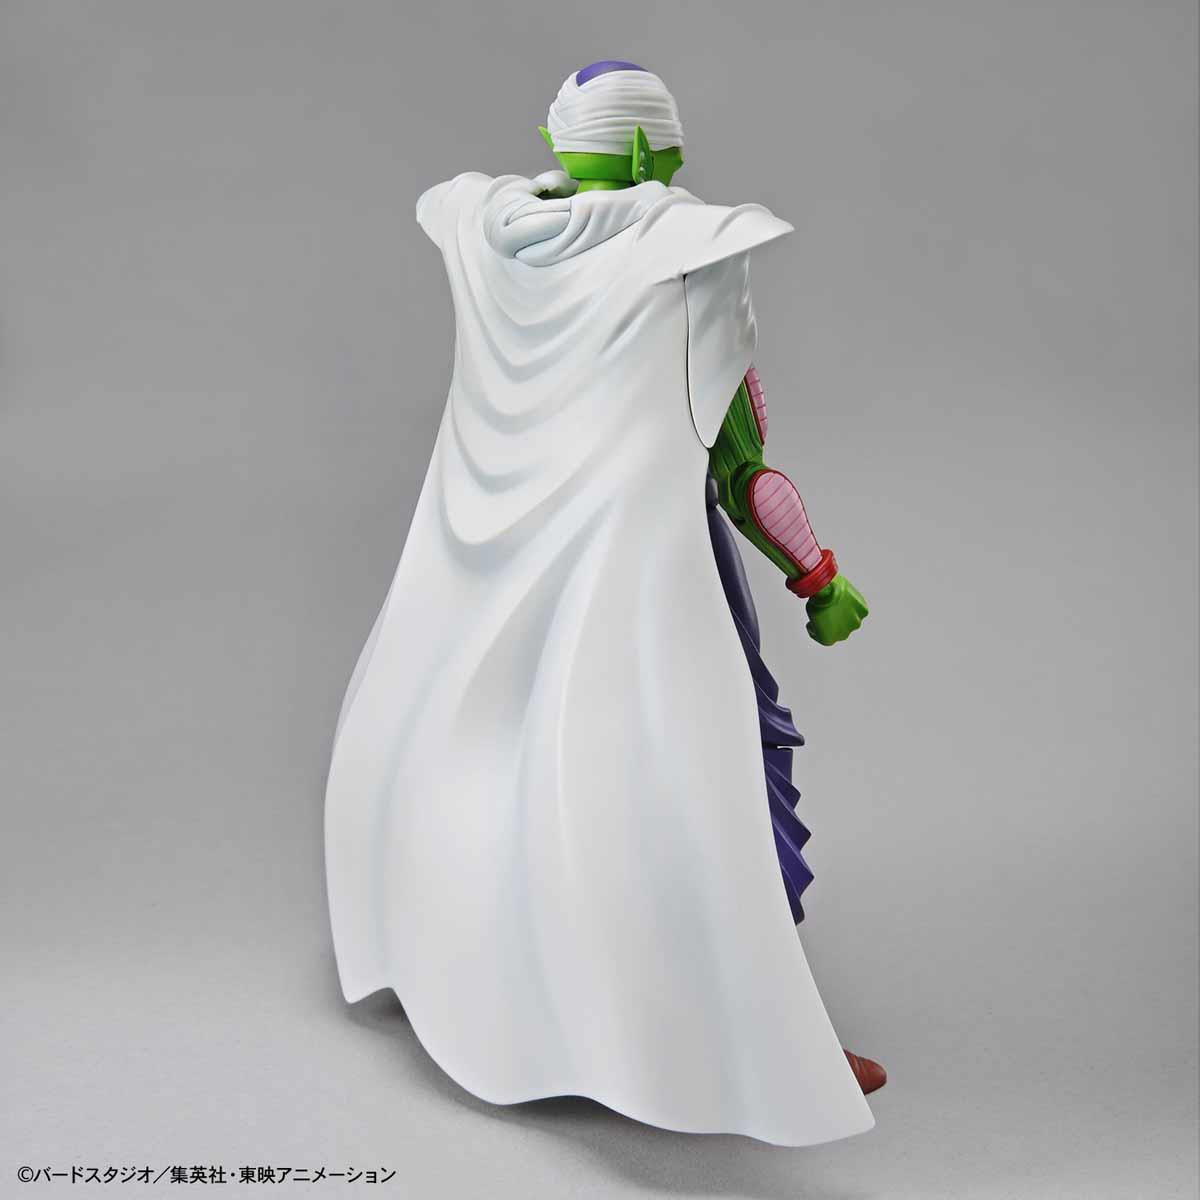 Dragon Ball Z: Figure-Rise Standard Piccolo